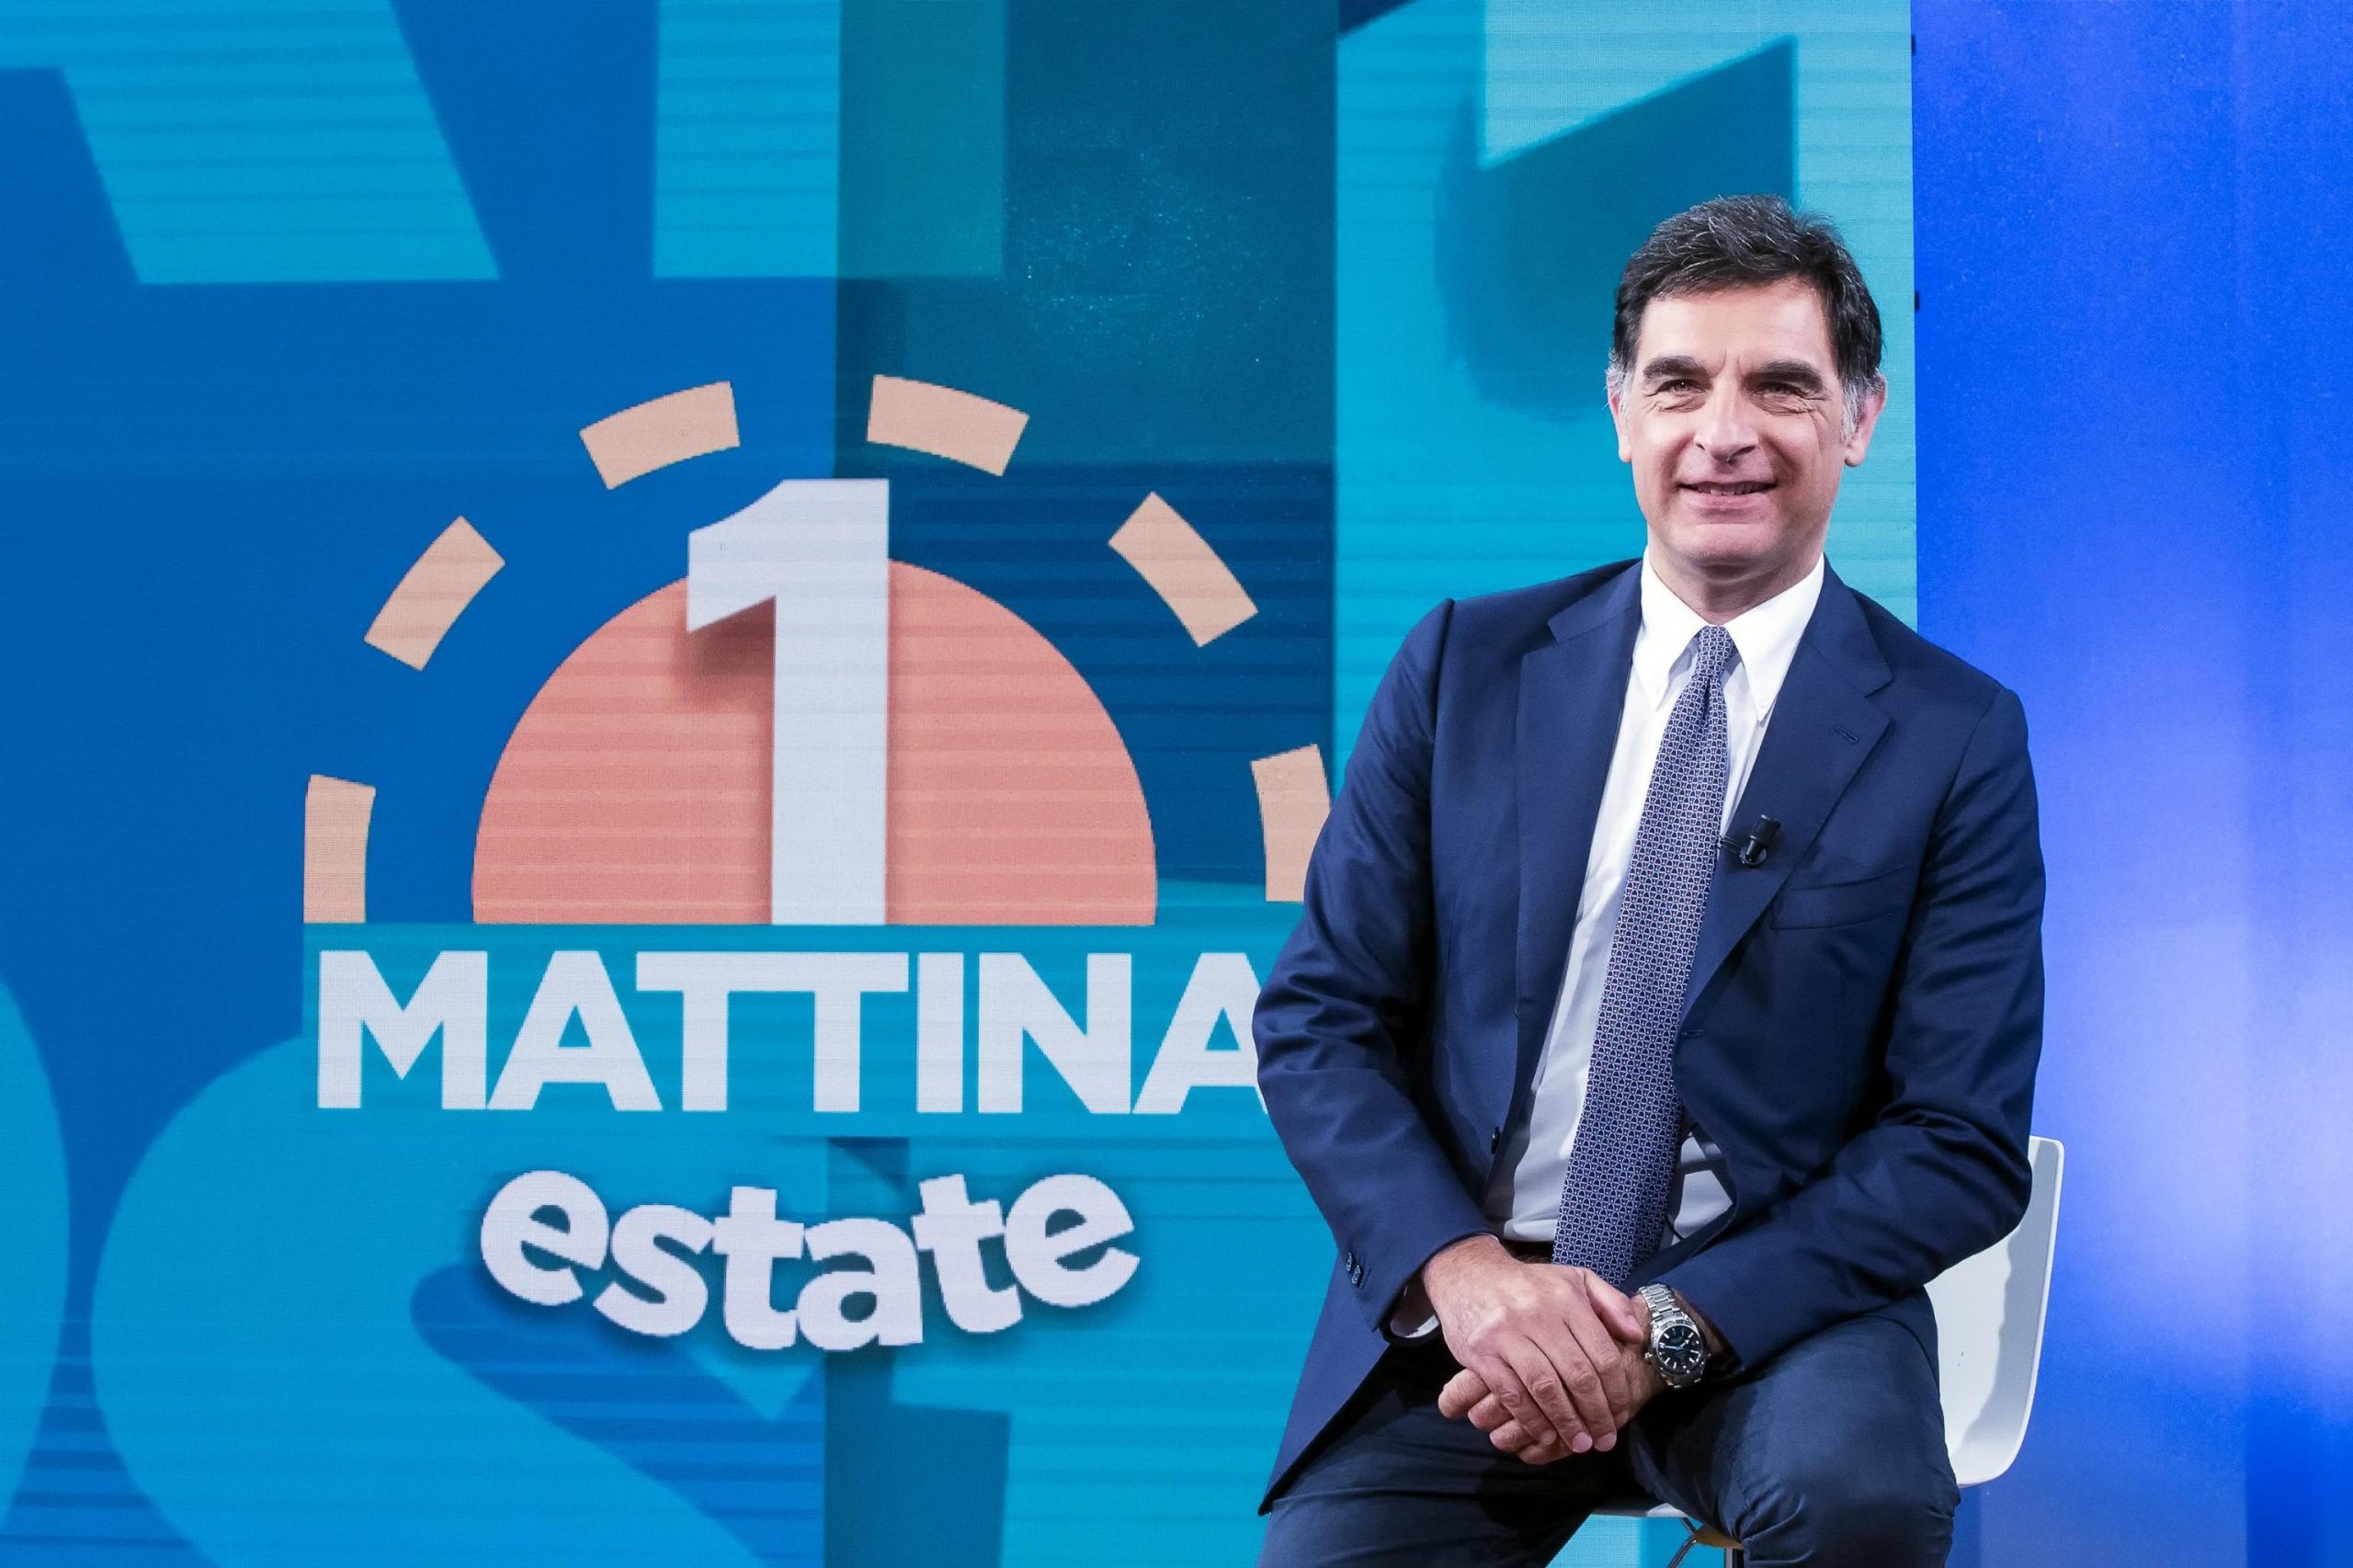 Tv: Rai; "Uno Mattina Estate"